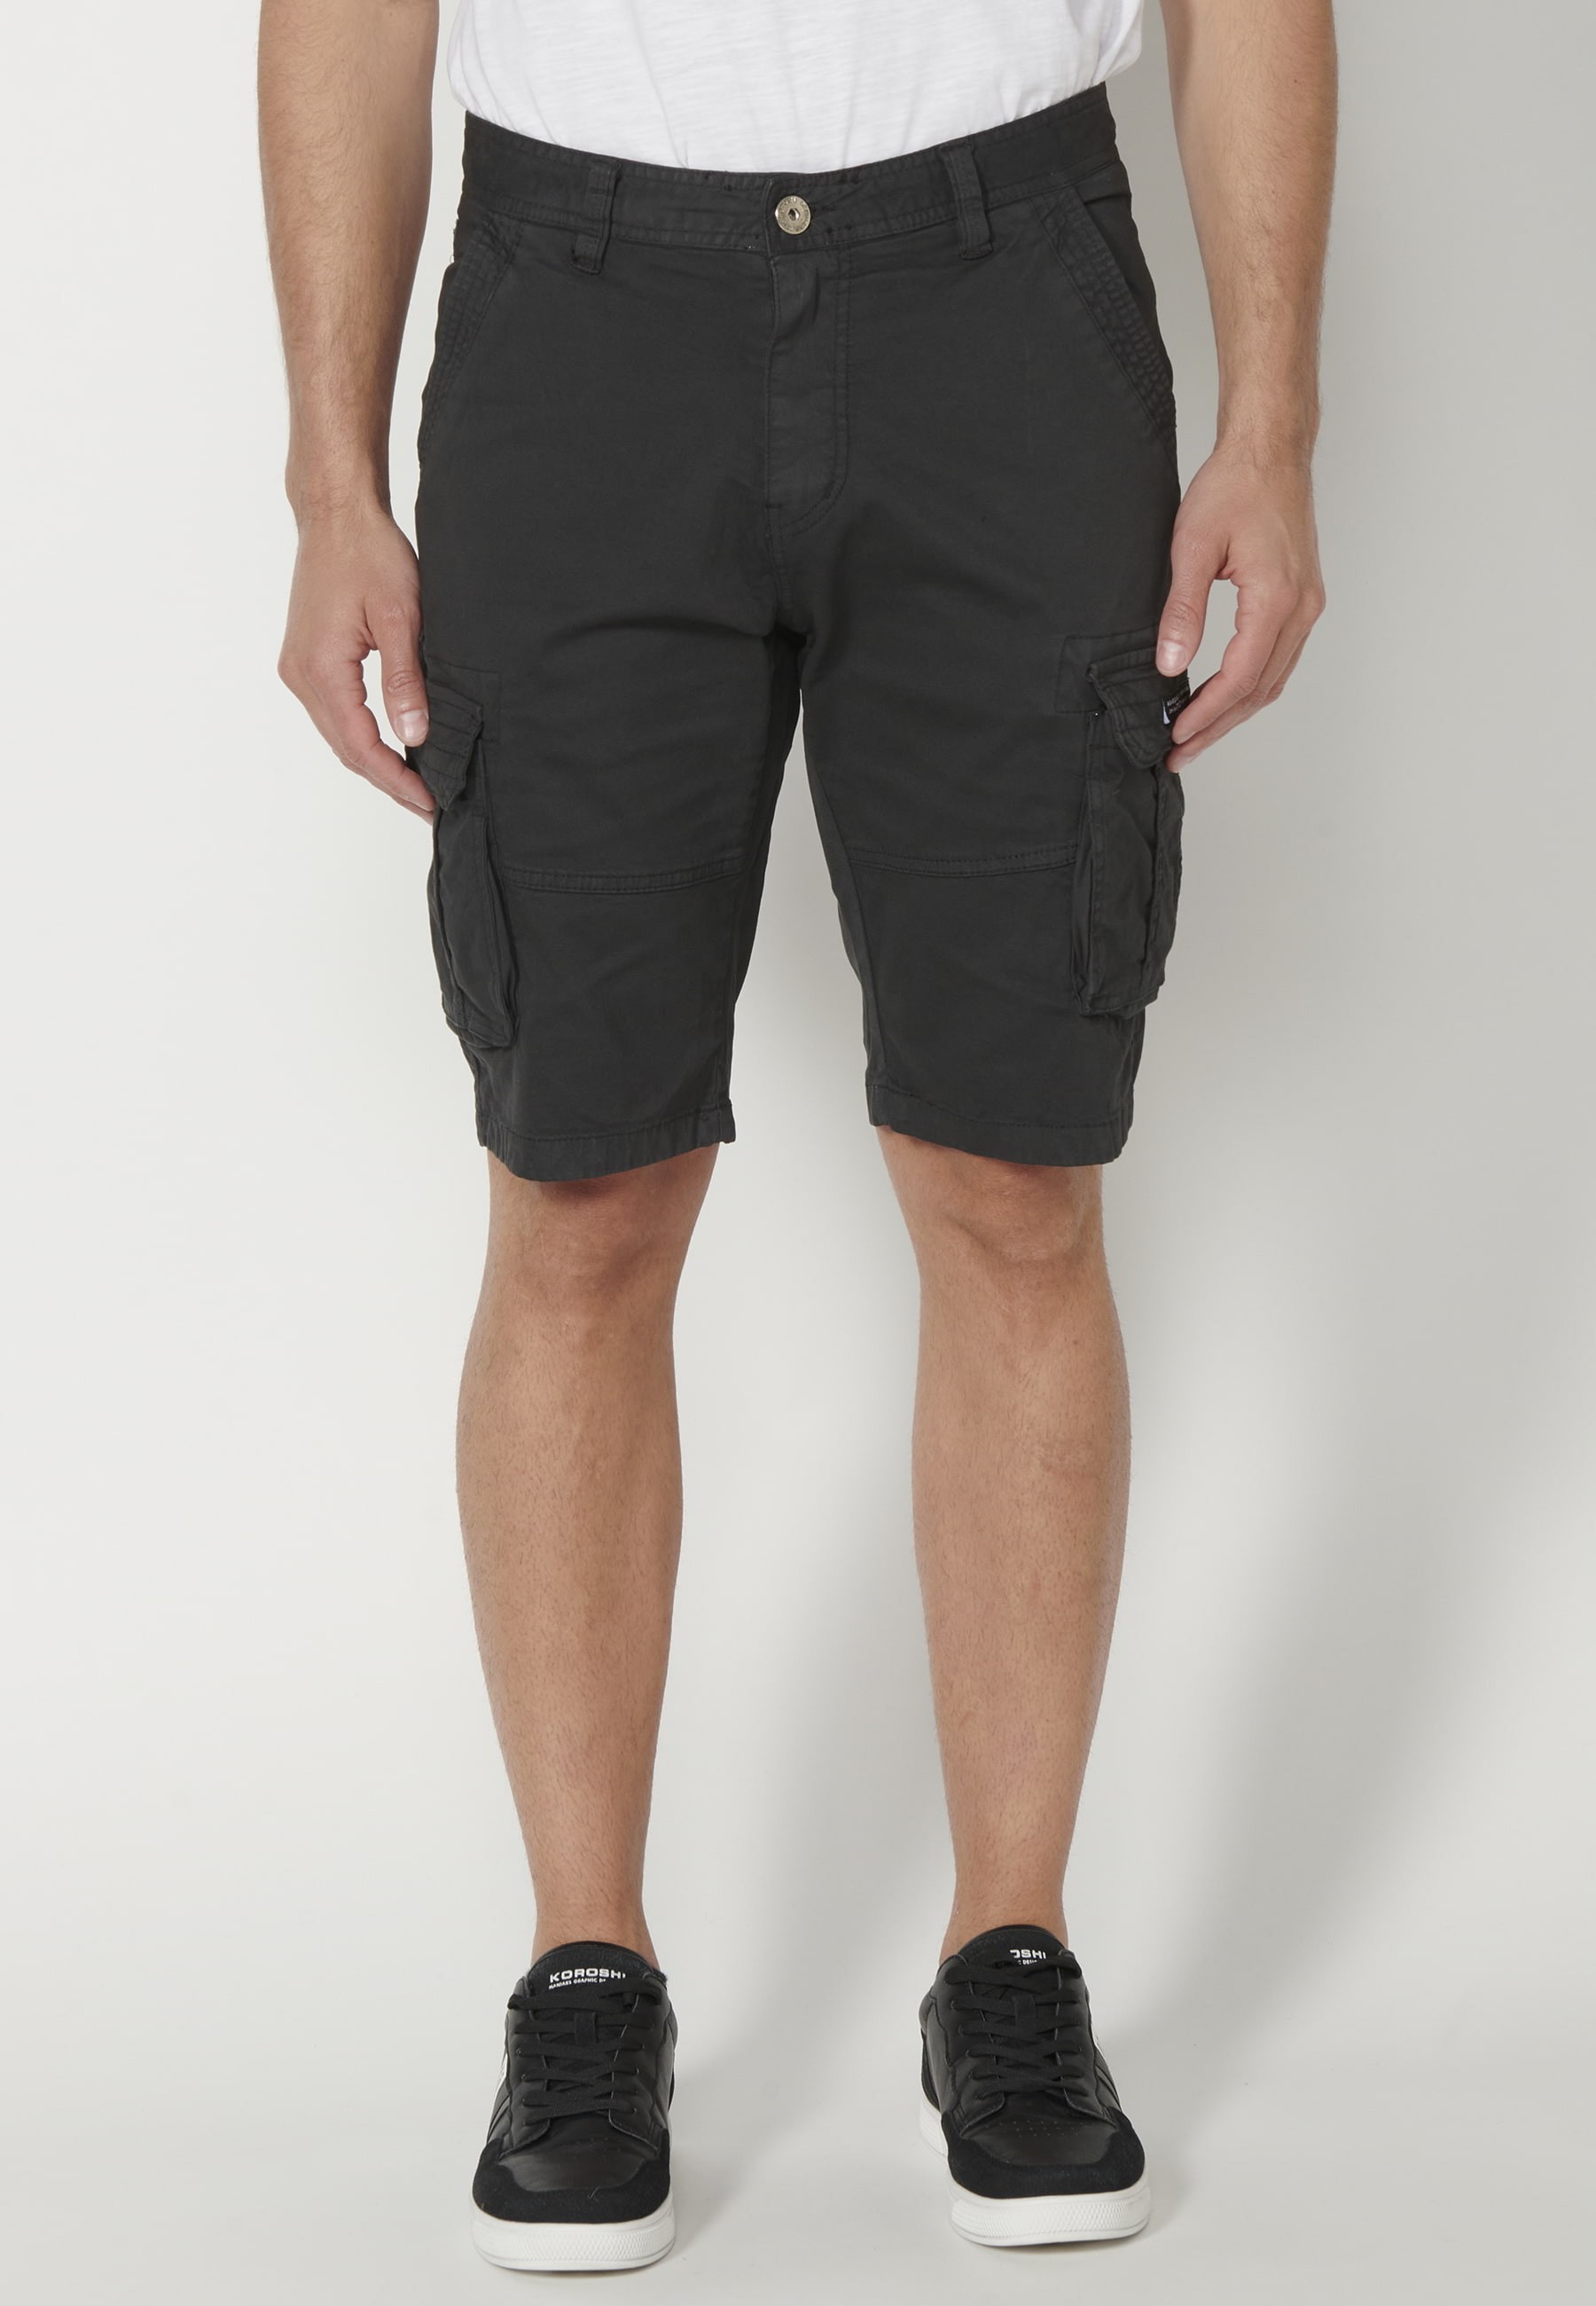 Pantalons curts Bermuda estil càrrec color Negre per a Home